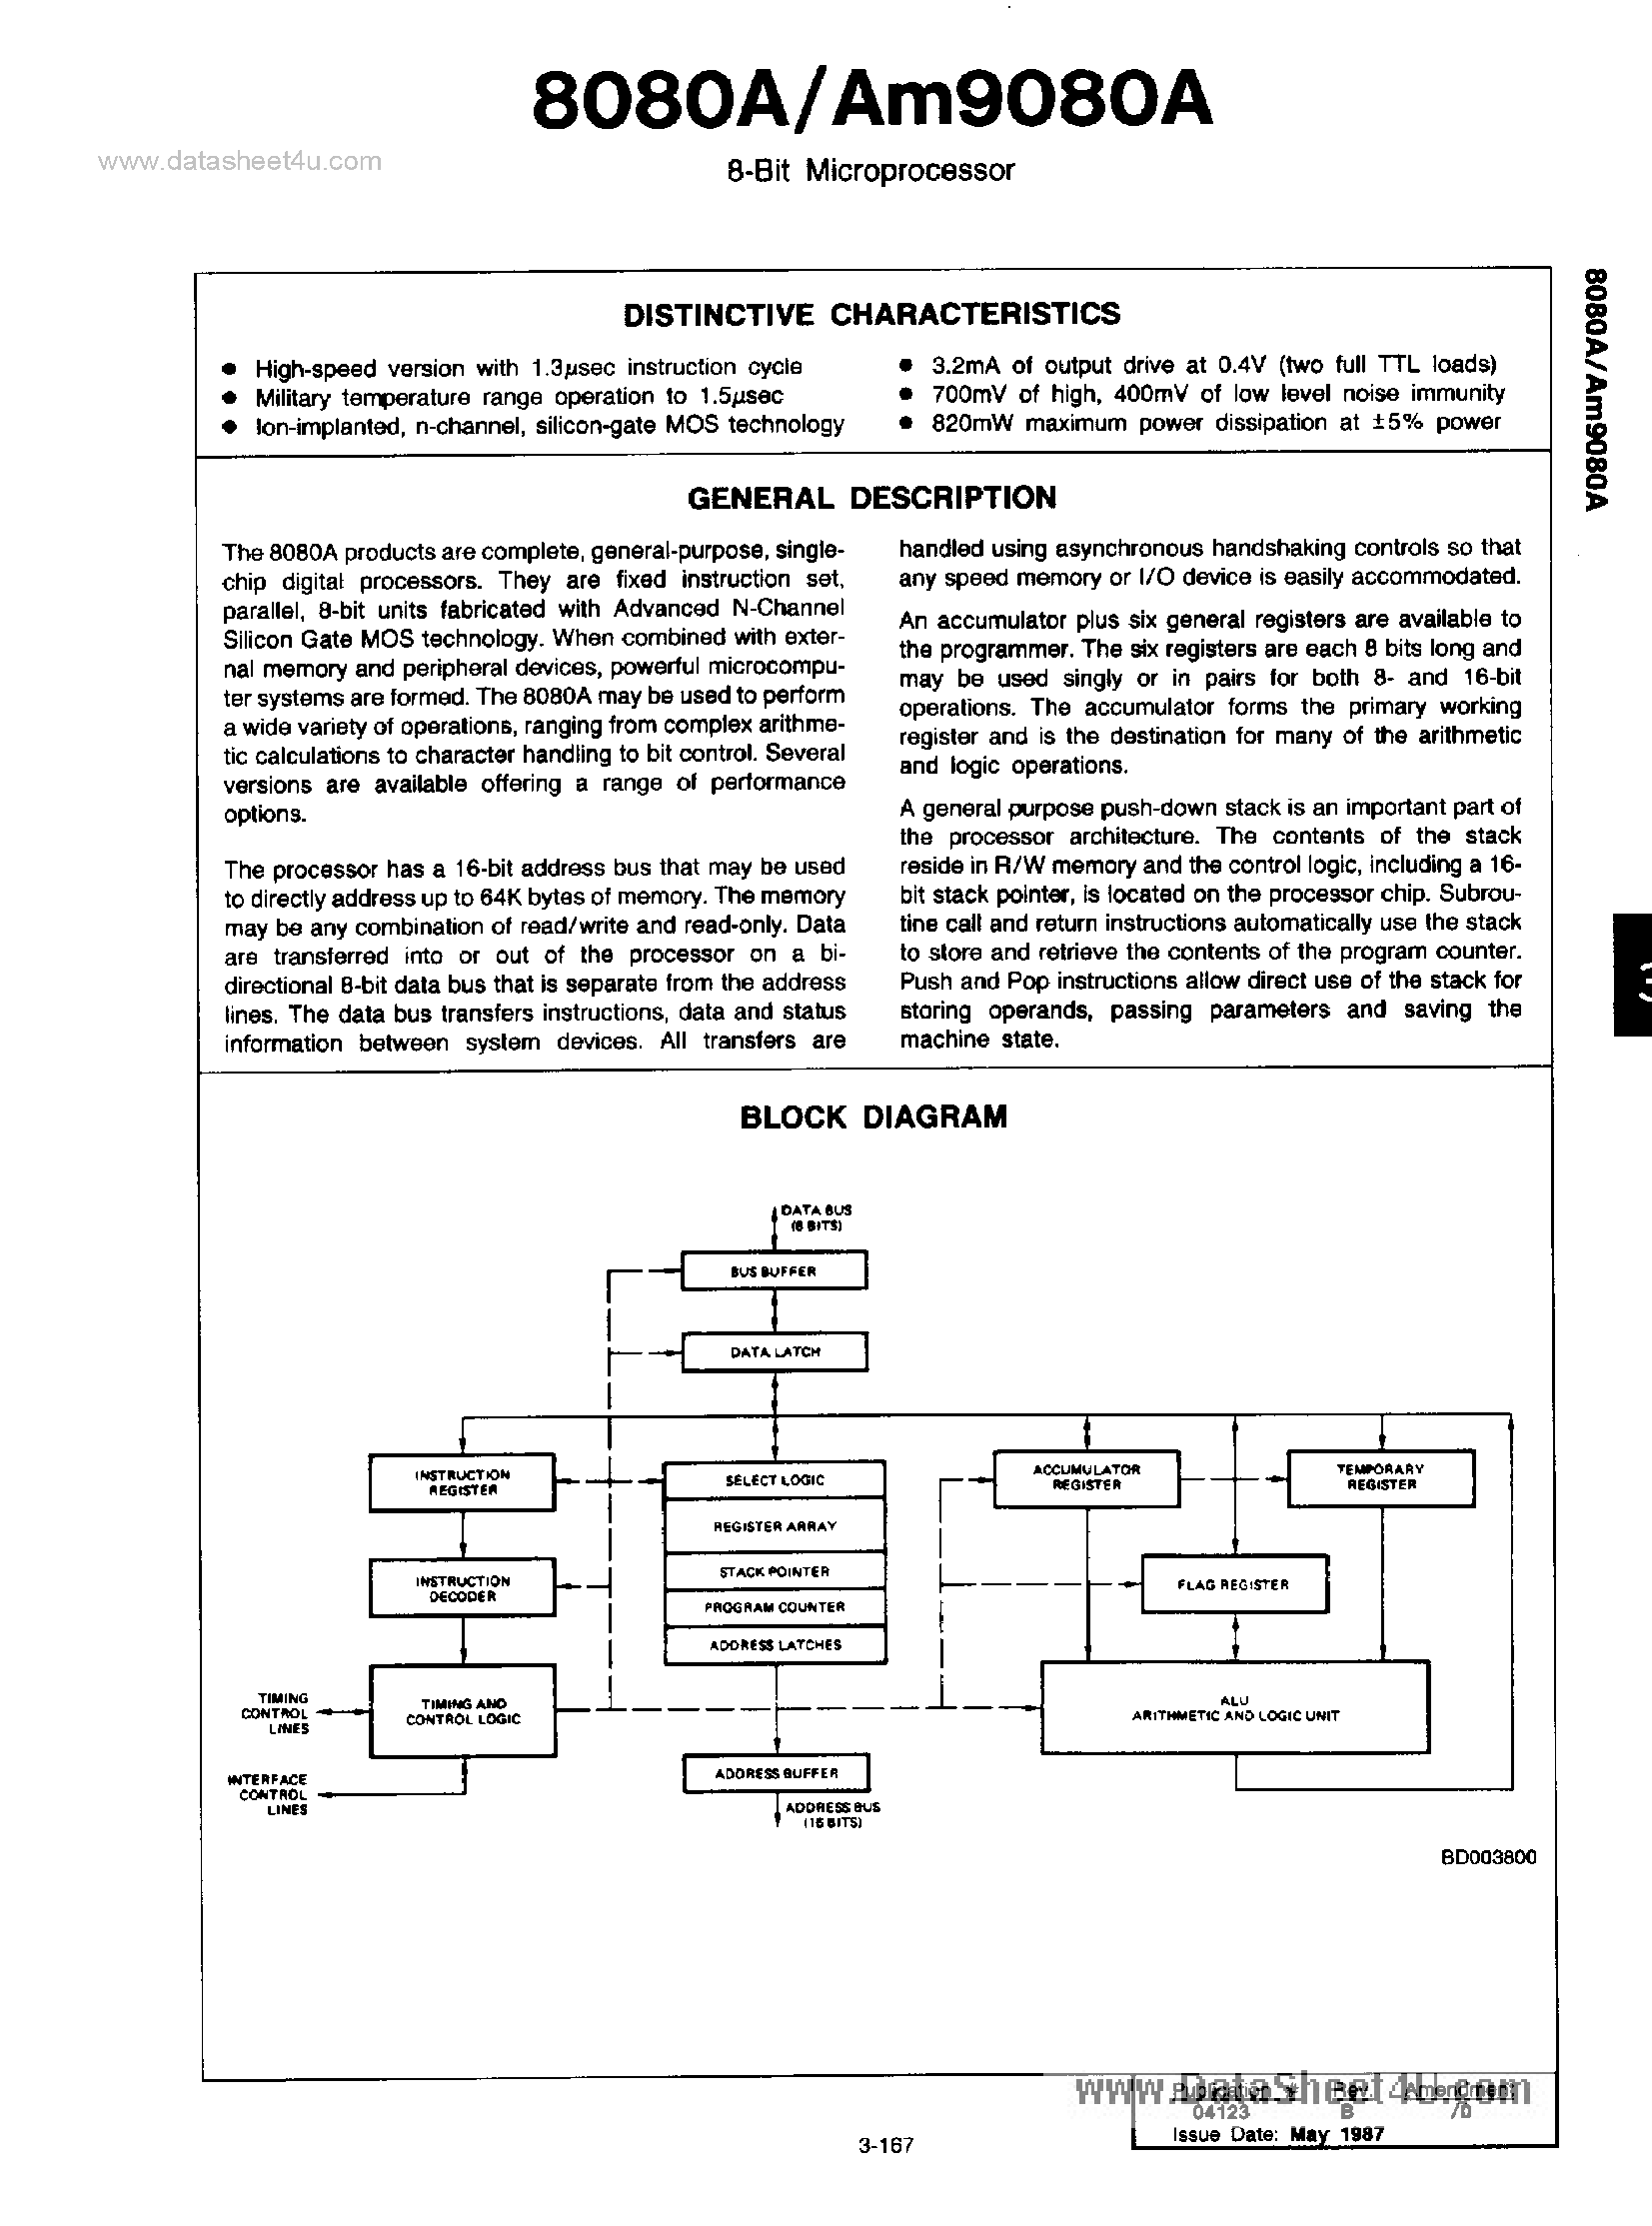 Даташит AM9080A - 8-Bit Microprocessor страница 1